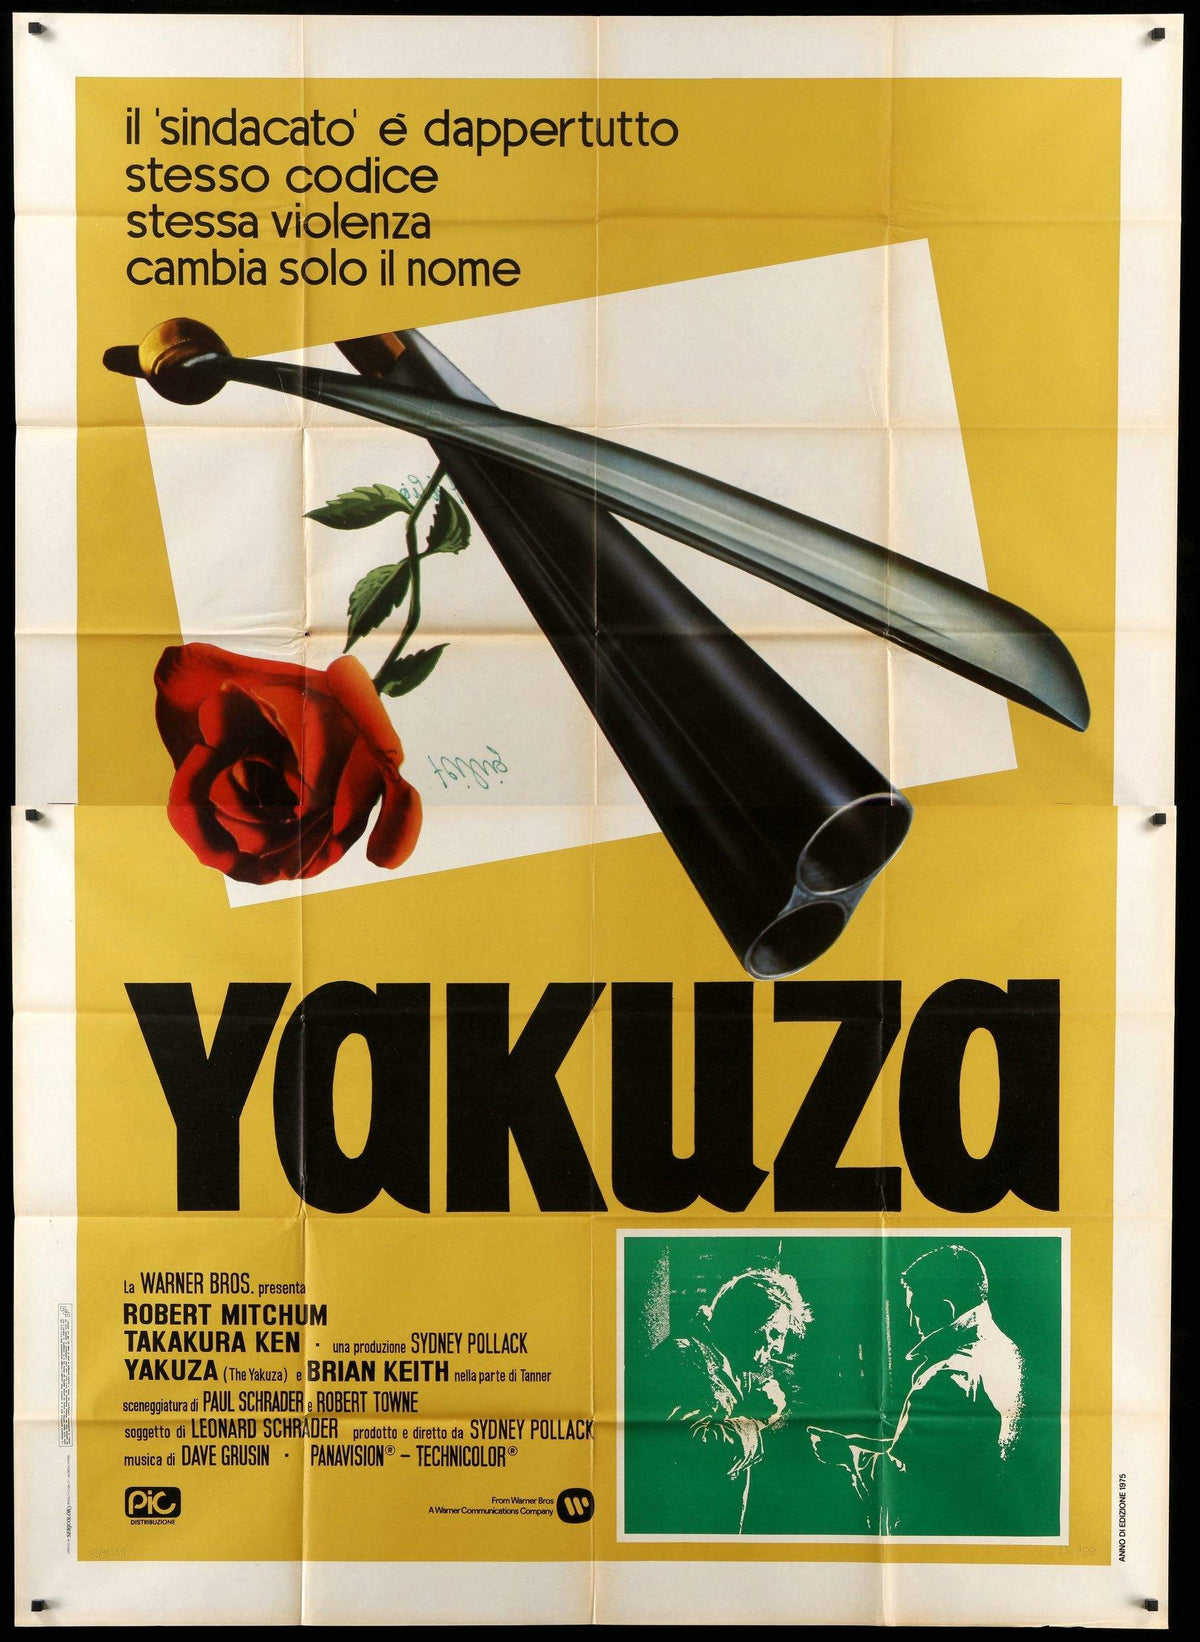 Yakuza (1974) original movie poster for sale at Original Film Art